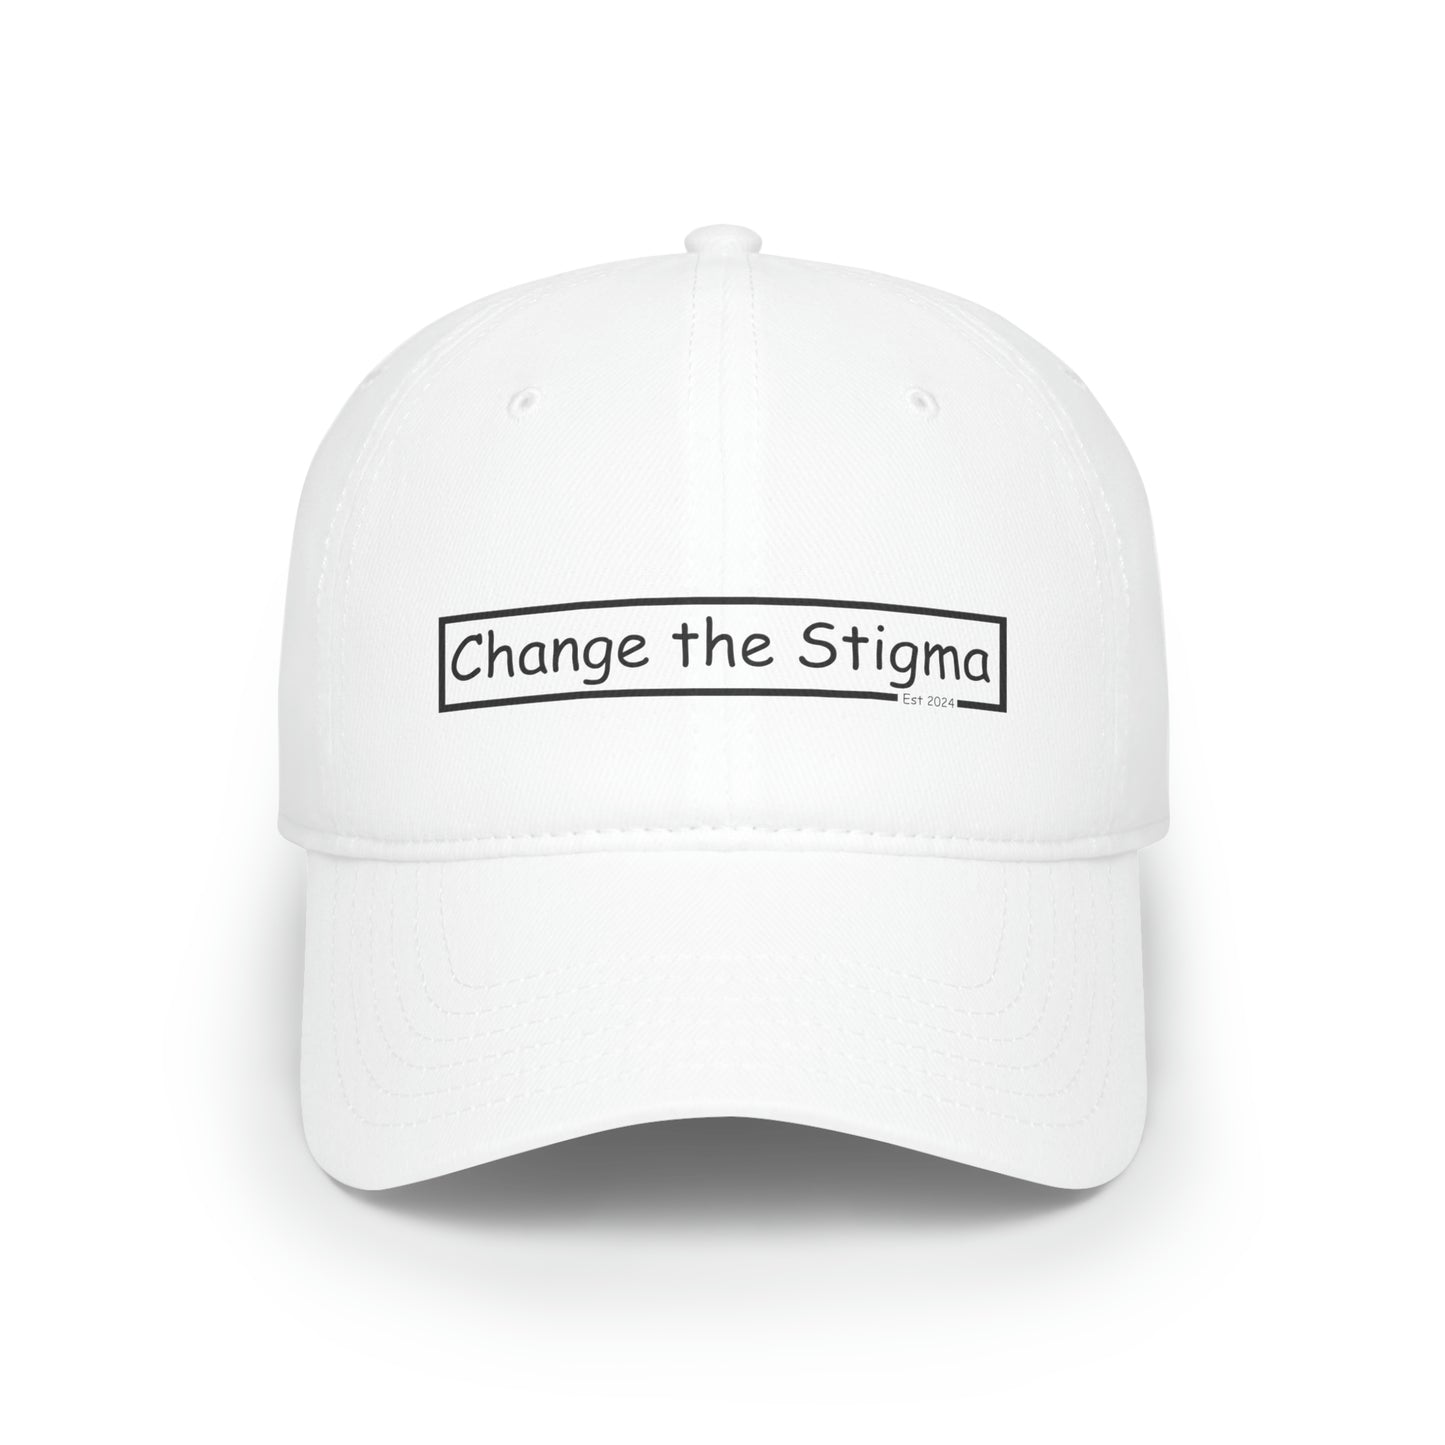 White baseball hat, Change the stigma, front shown.